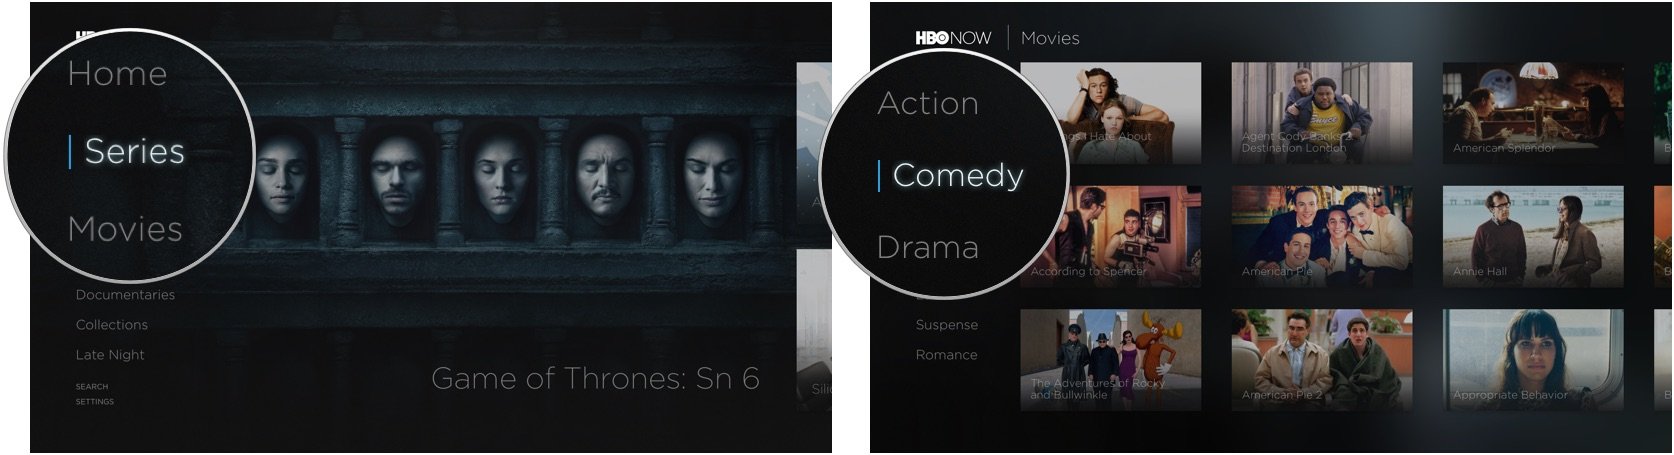 Поиск категорий в HBO Now на Apple TV